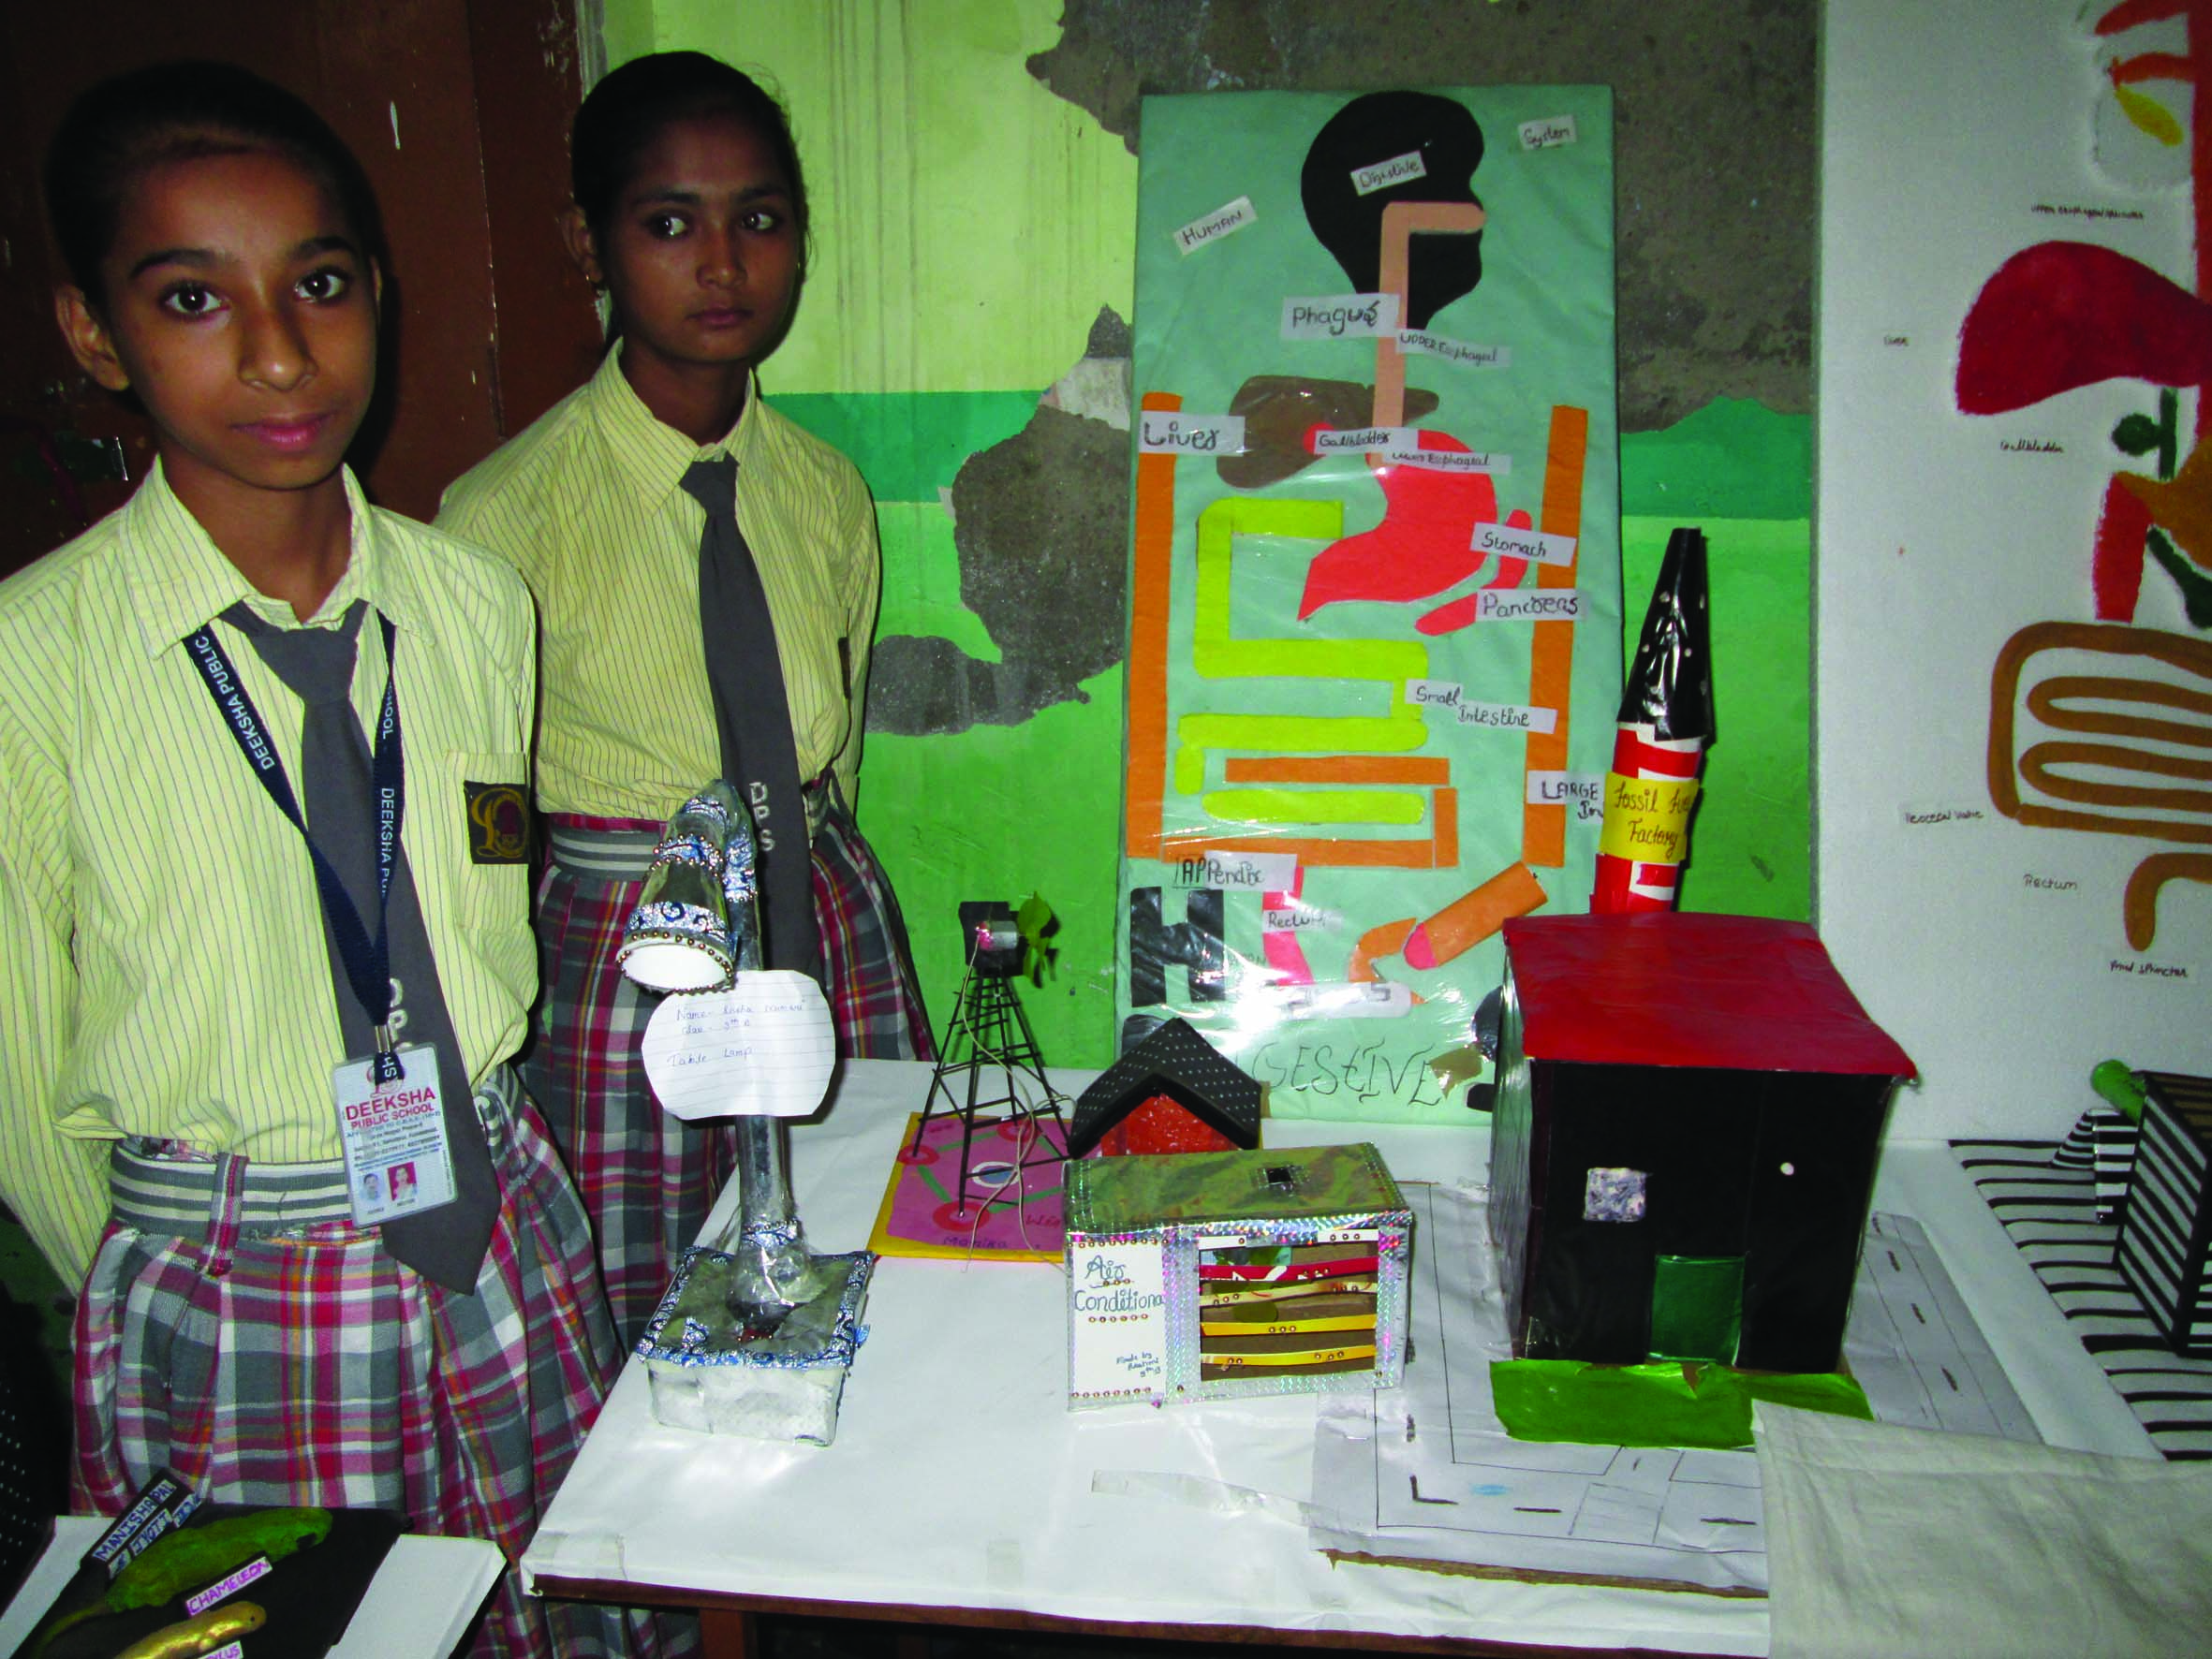 दीक्षा पब्लिक स्कूल के छात्र-छात्राओं ने विज्ञान, सामाजिक विज्ञान, भूगोल, गणित को लेकर एक ऐसी प्रदर्शनी का प्रदर्शन किया